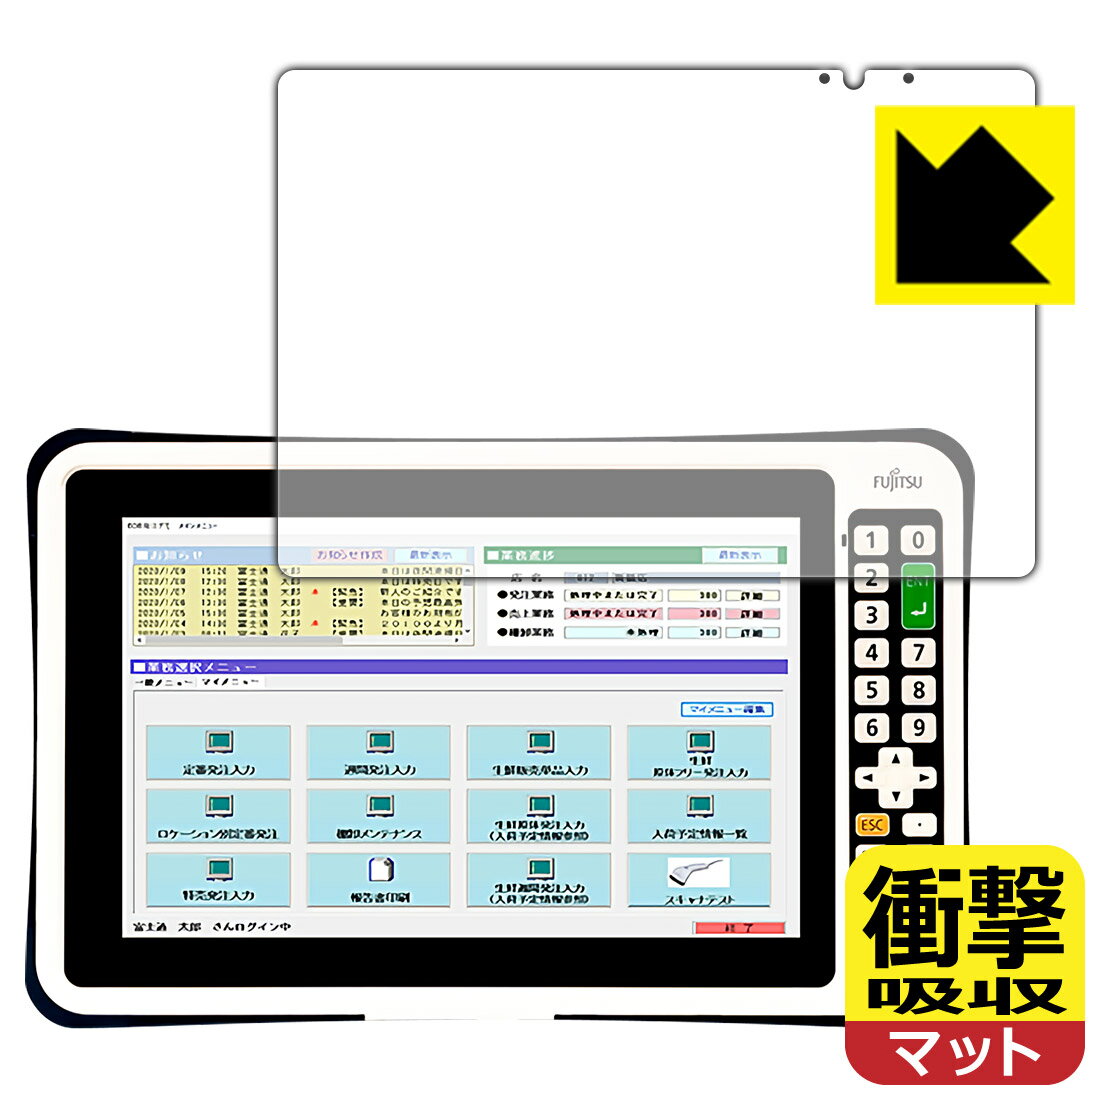 衝撃吸収保護フィルム FUJITSU Handheld Terminal Patio 720A (テンキーあり) 日本製 自社製造直販